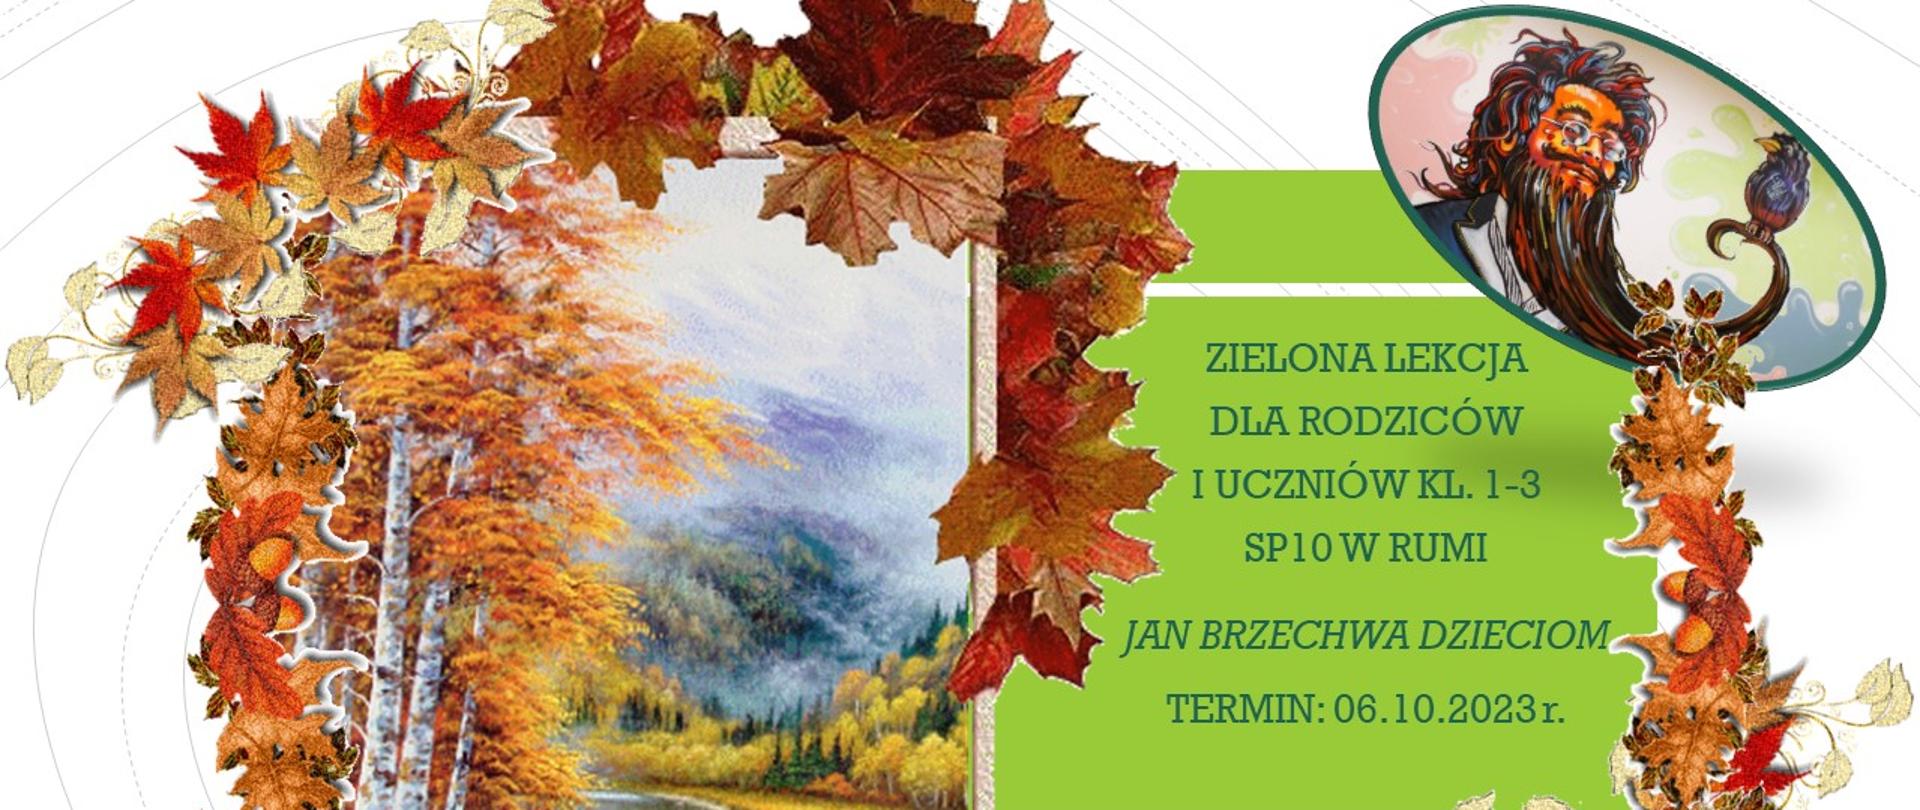 Plakat z napisem ZIELONA LEKCJA " Jan Brzechwa dzieciom" Termin: 06.10.2023. Po lewej stronie widok jesienny z górami i rzeką.